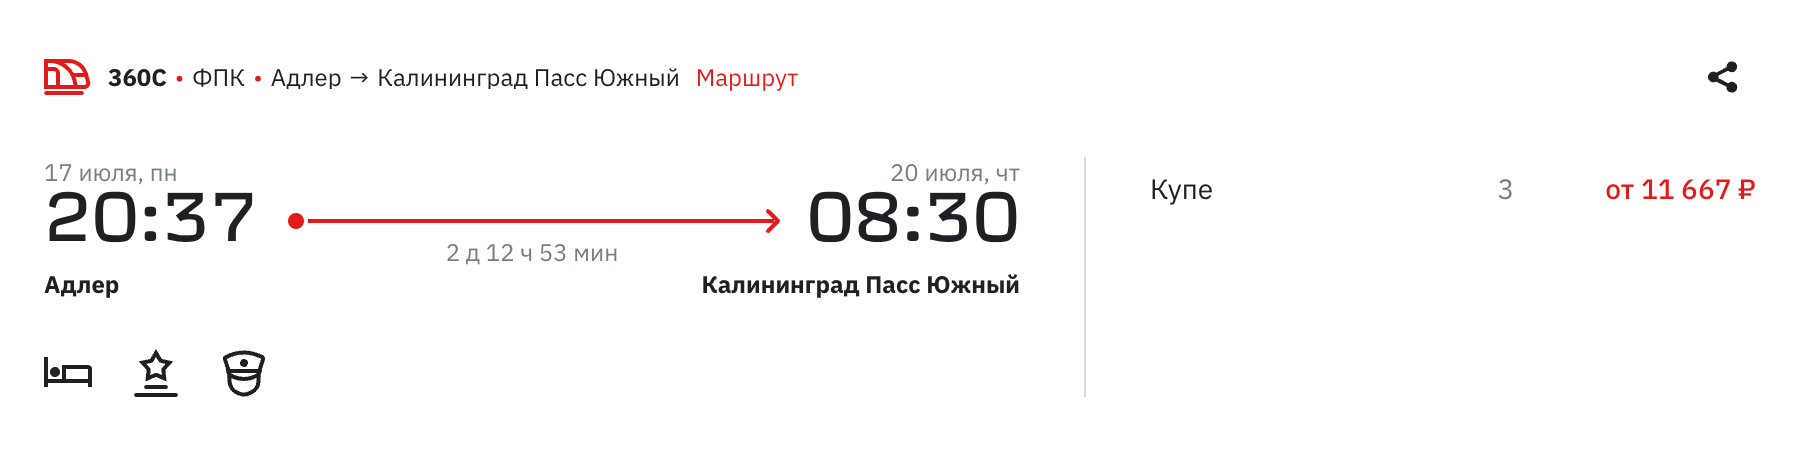 Билет в купейный вагон поезда Адлер — Калининград на 17 июля стоит 11 667 ₽. Источник: ticket.rzd.ru